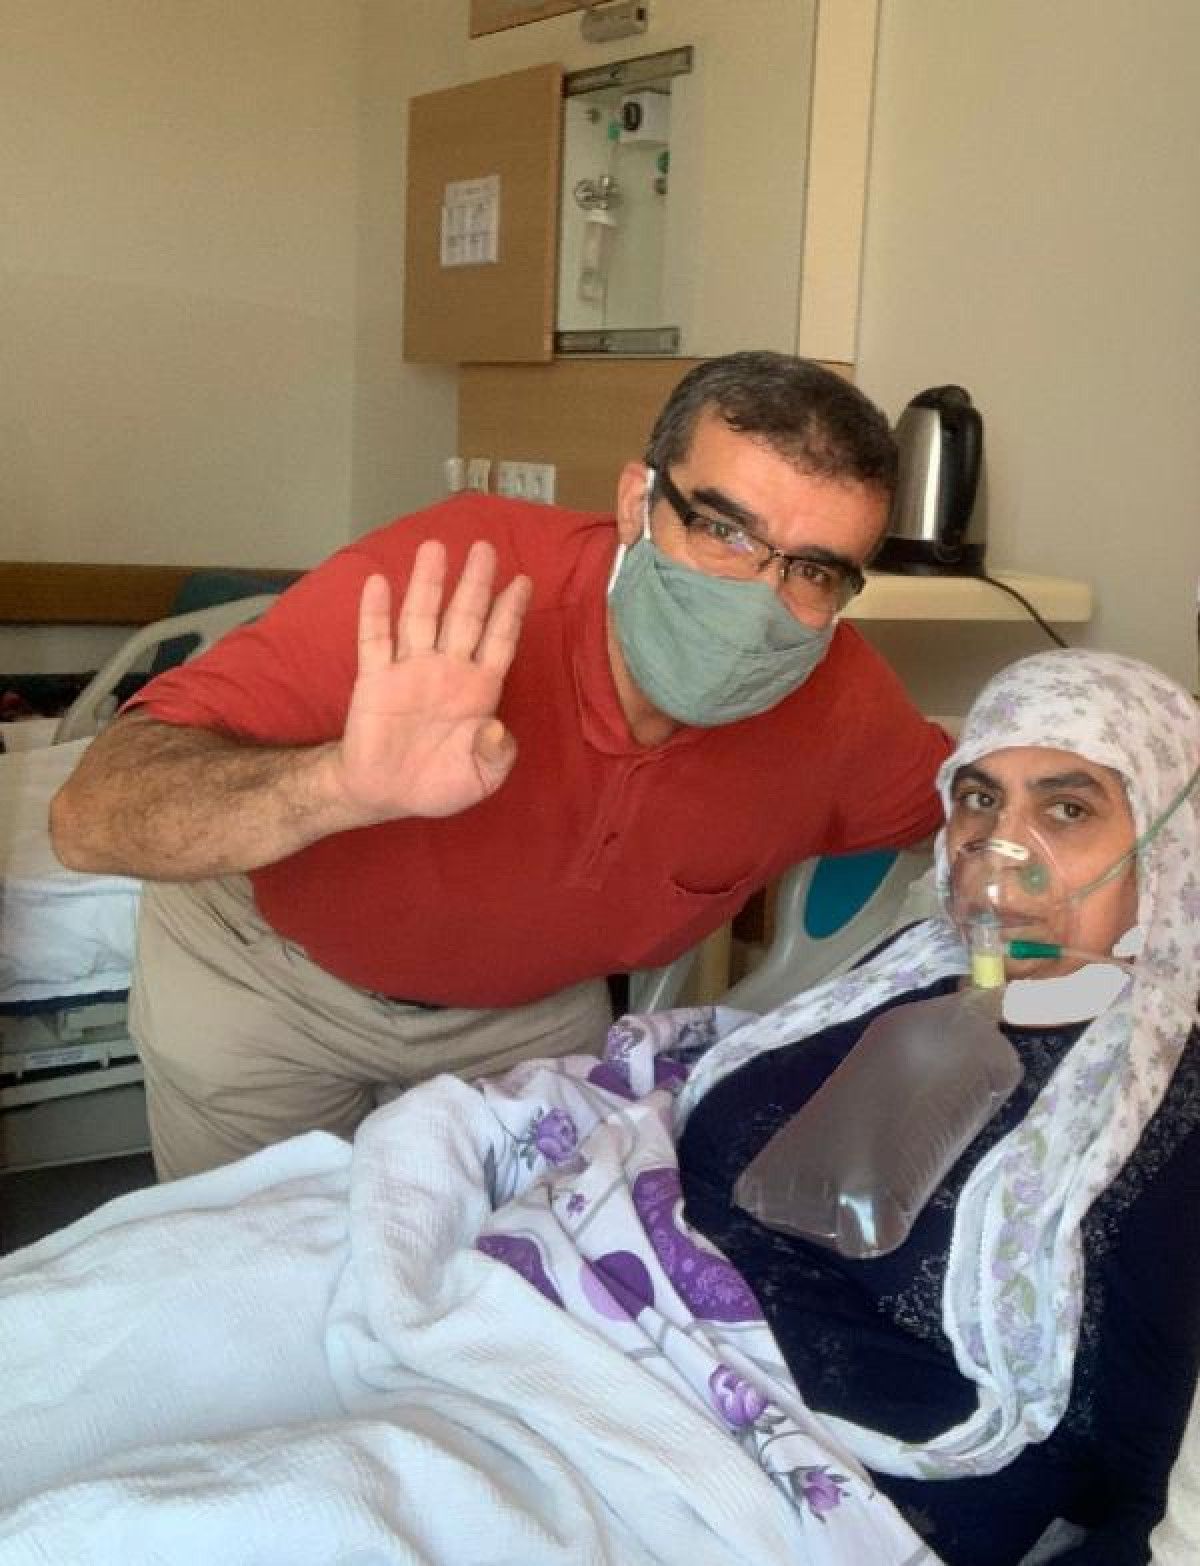 Gaziantep te koronaya yakalanan hasta: Bilerek aşı olmayan kişi, kendi katili gibidir #3